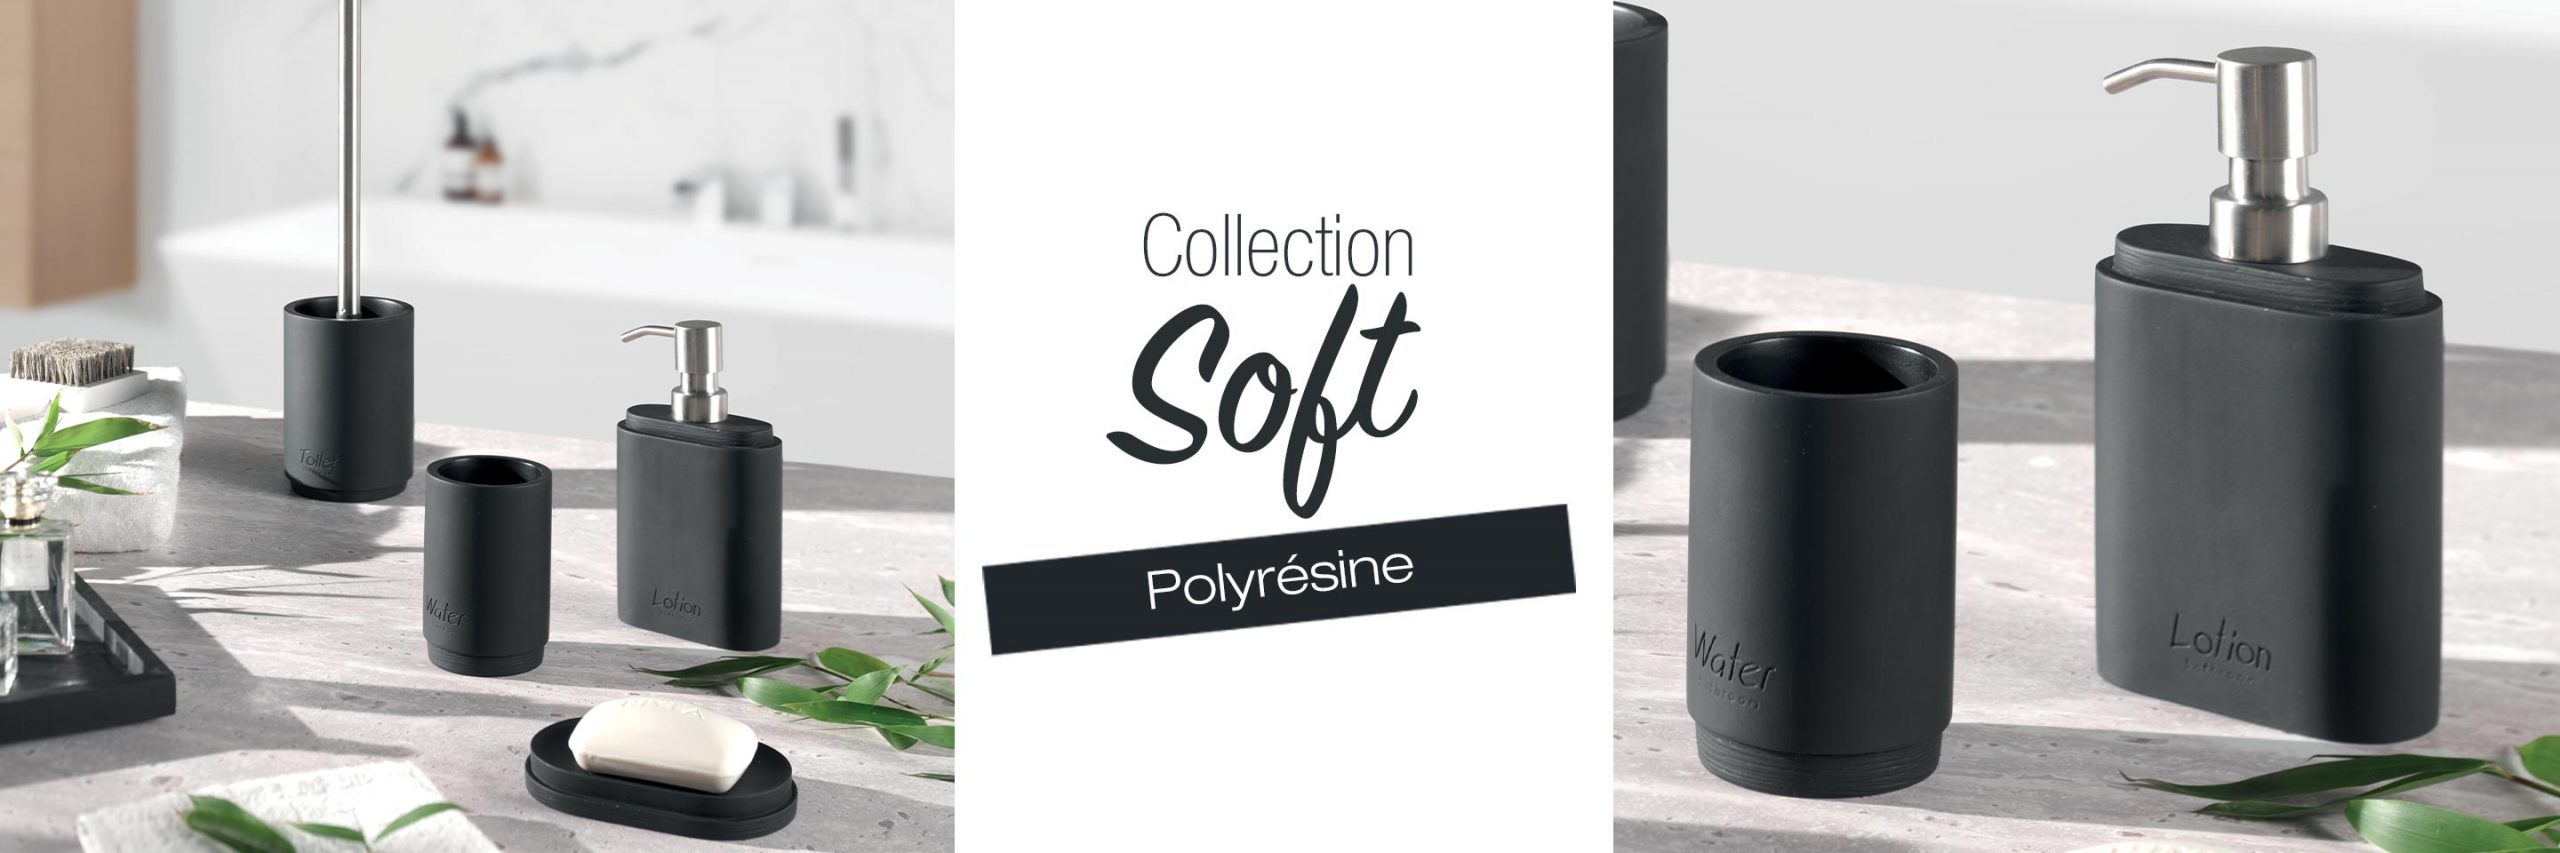 Collection SOFT polyrésine noire